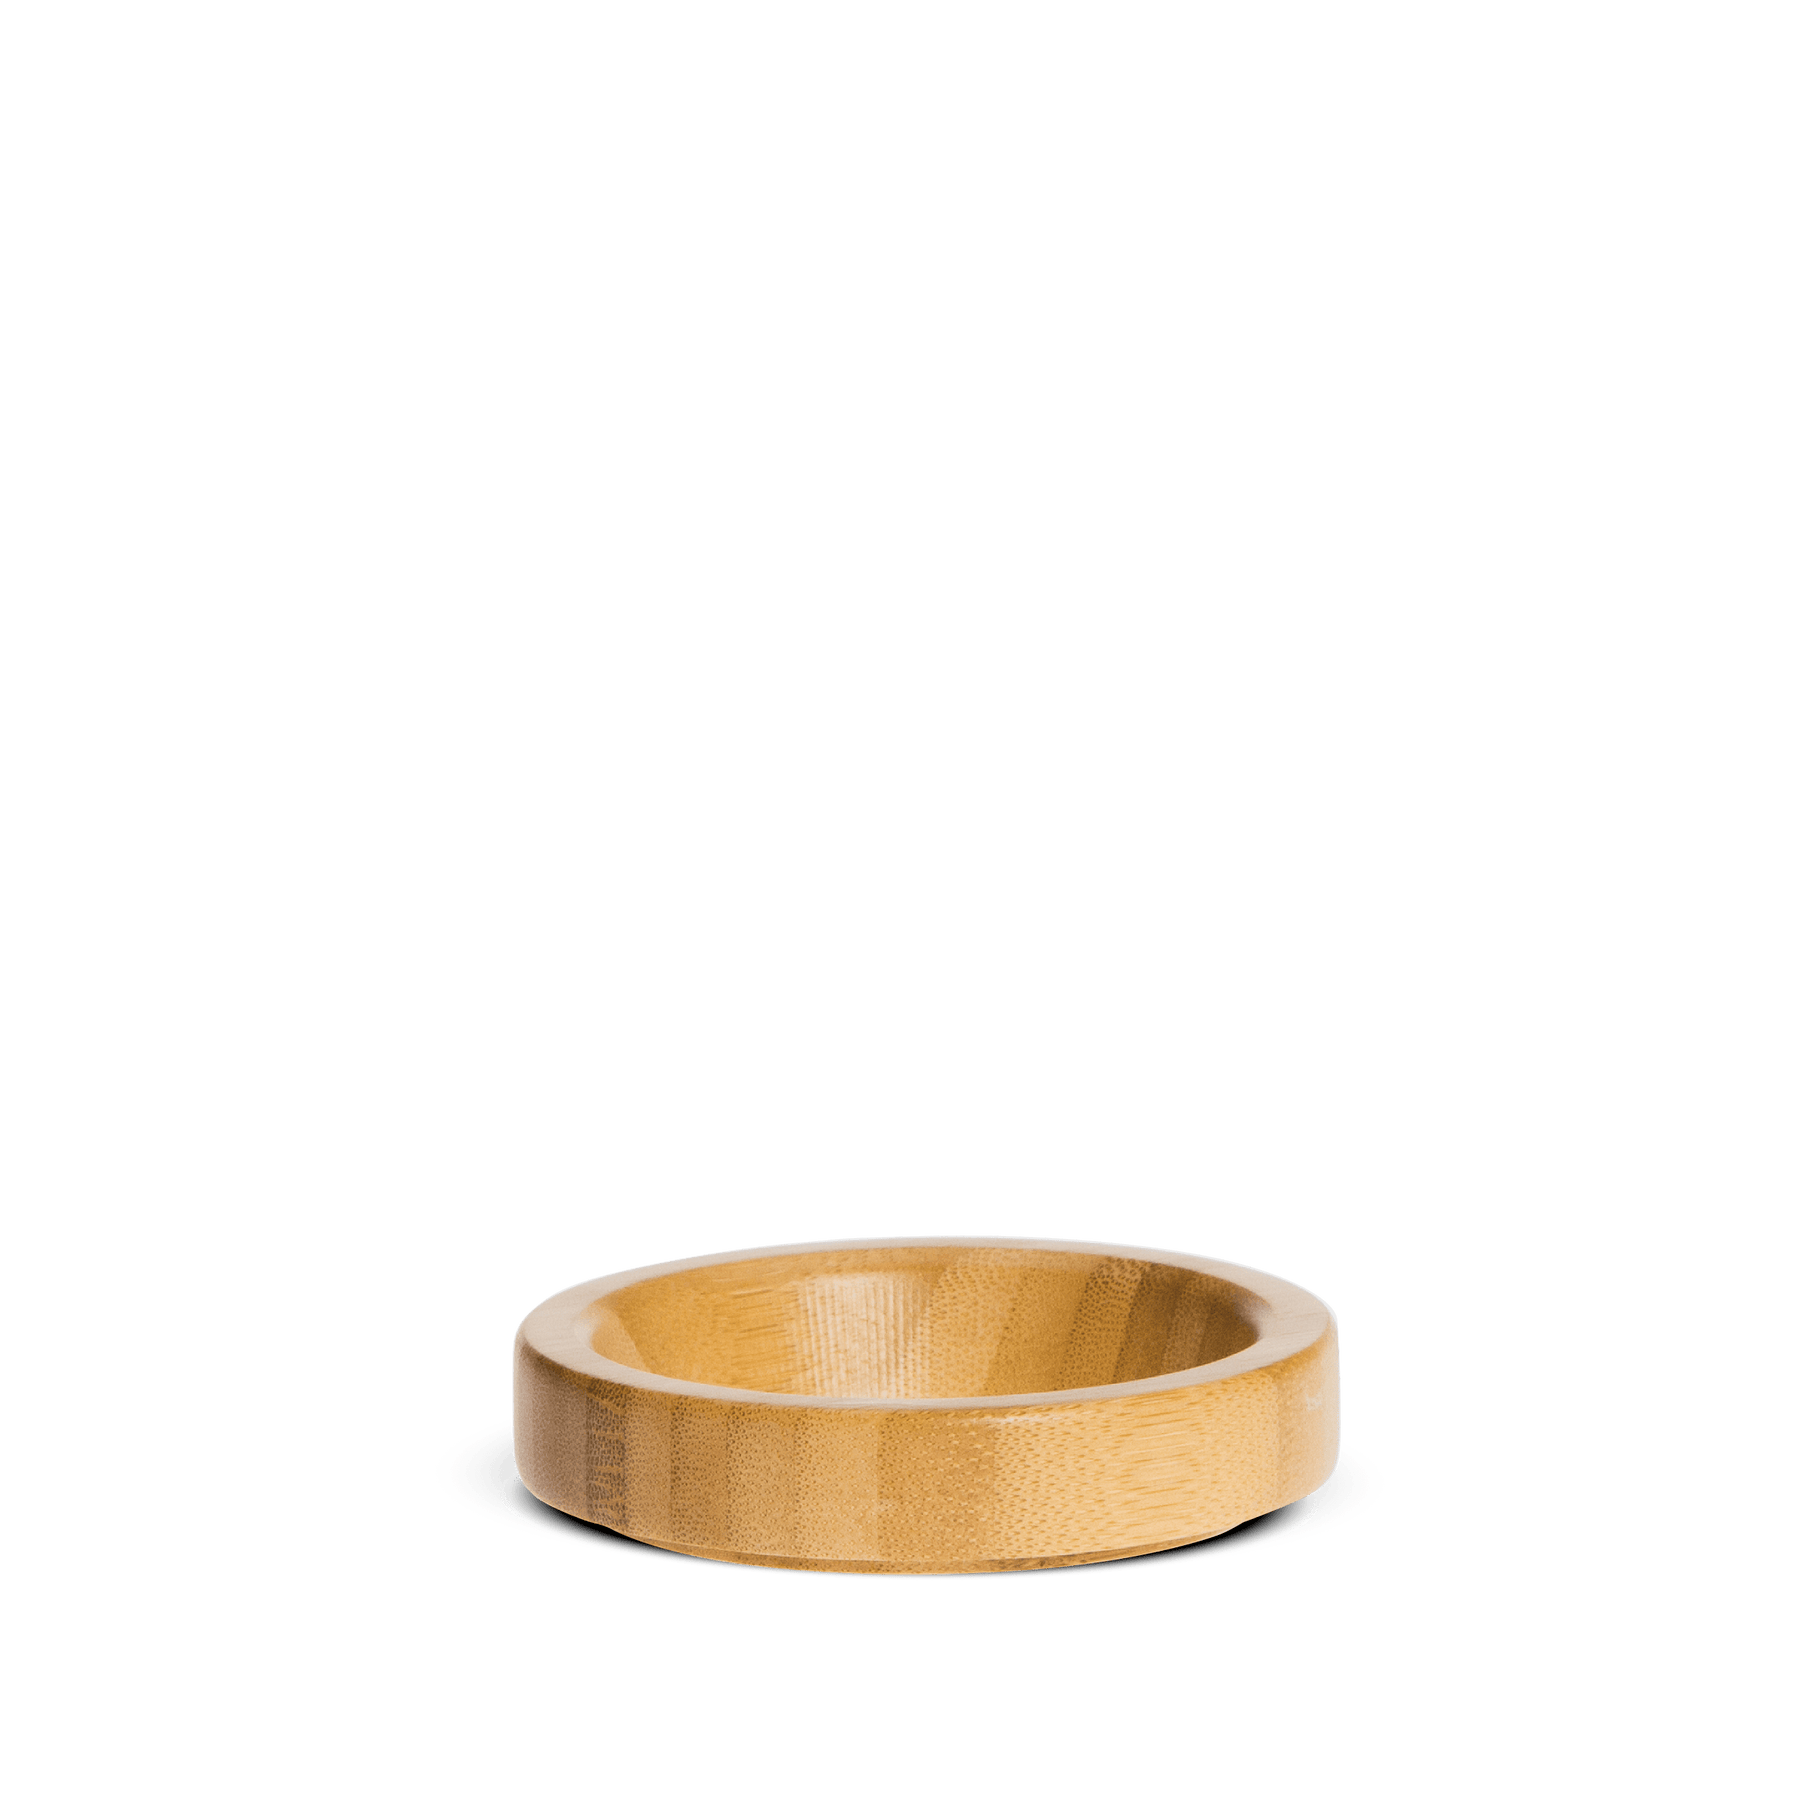 holz-ring-halterung-kaffee-filter